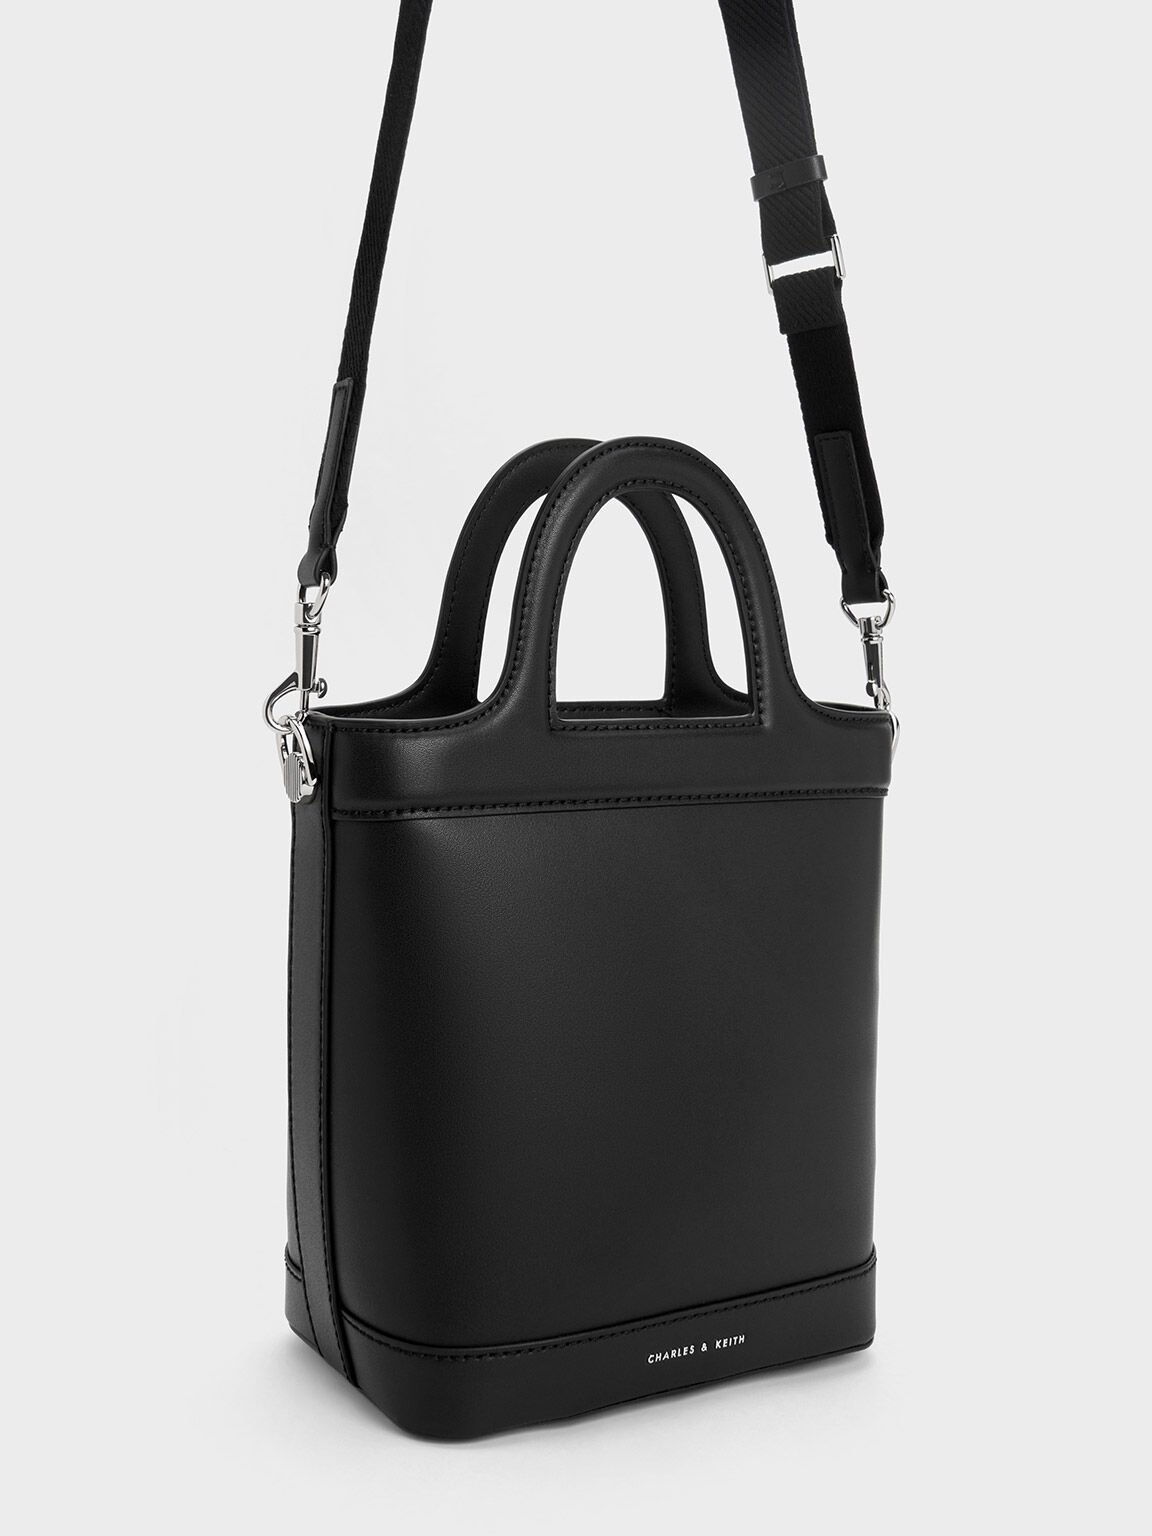 Black Bronte Top Handle Bucket Bag - CHARLES & KEITH MX